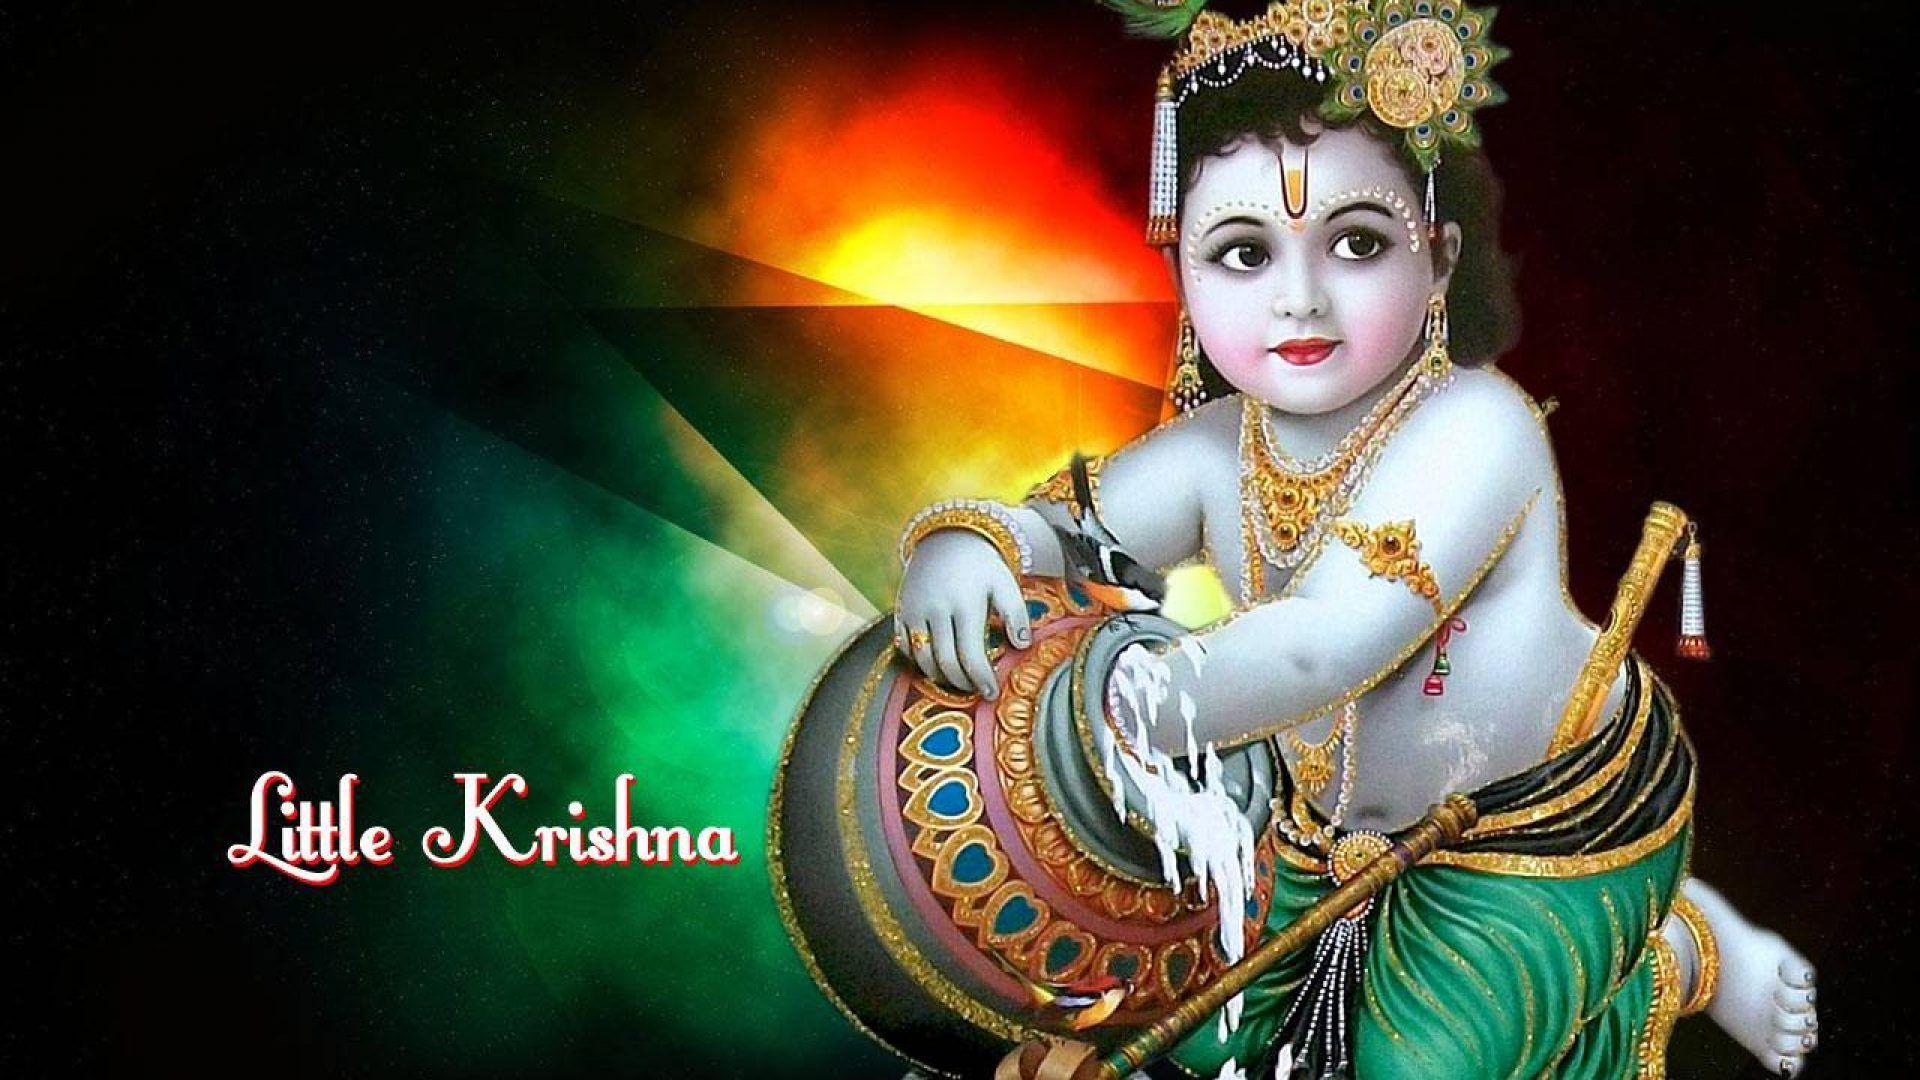 Baby Krishna Wallpaper Full Size Download. Lord Krishna. Latest